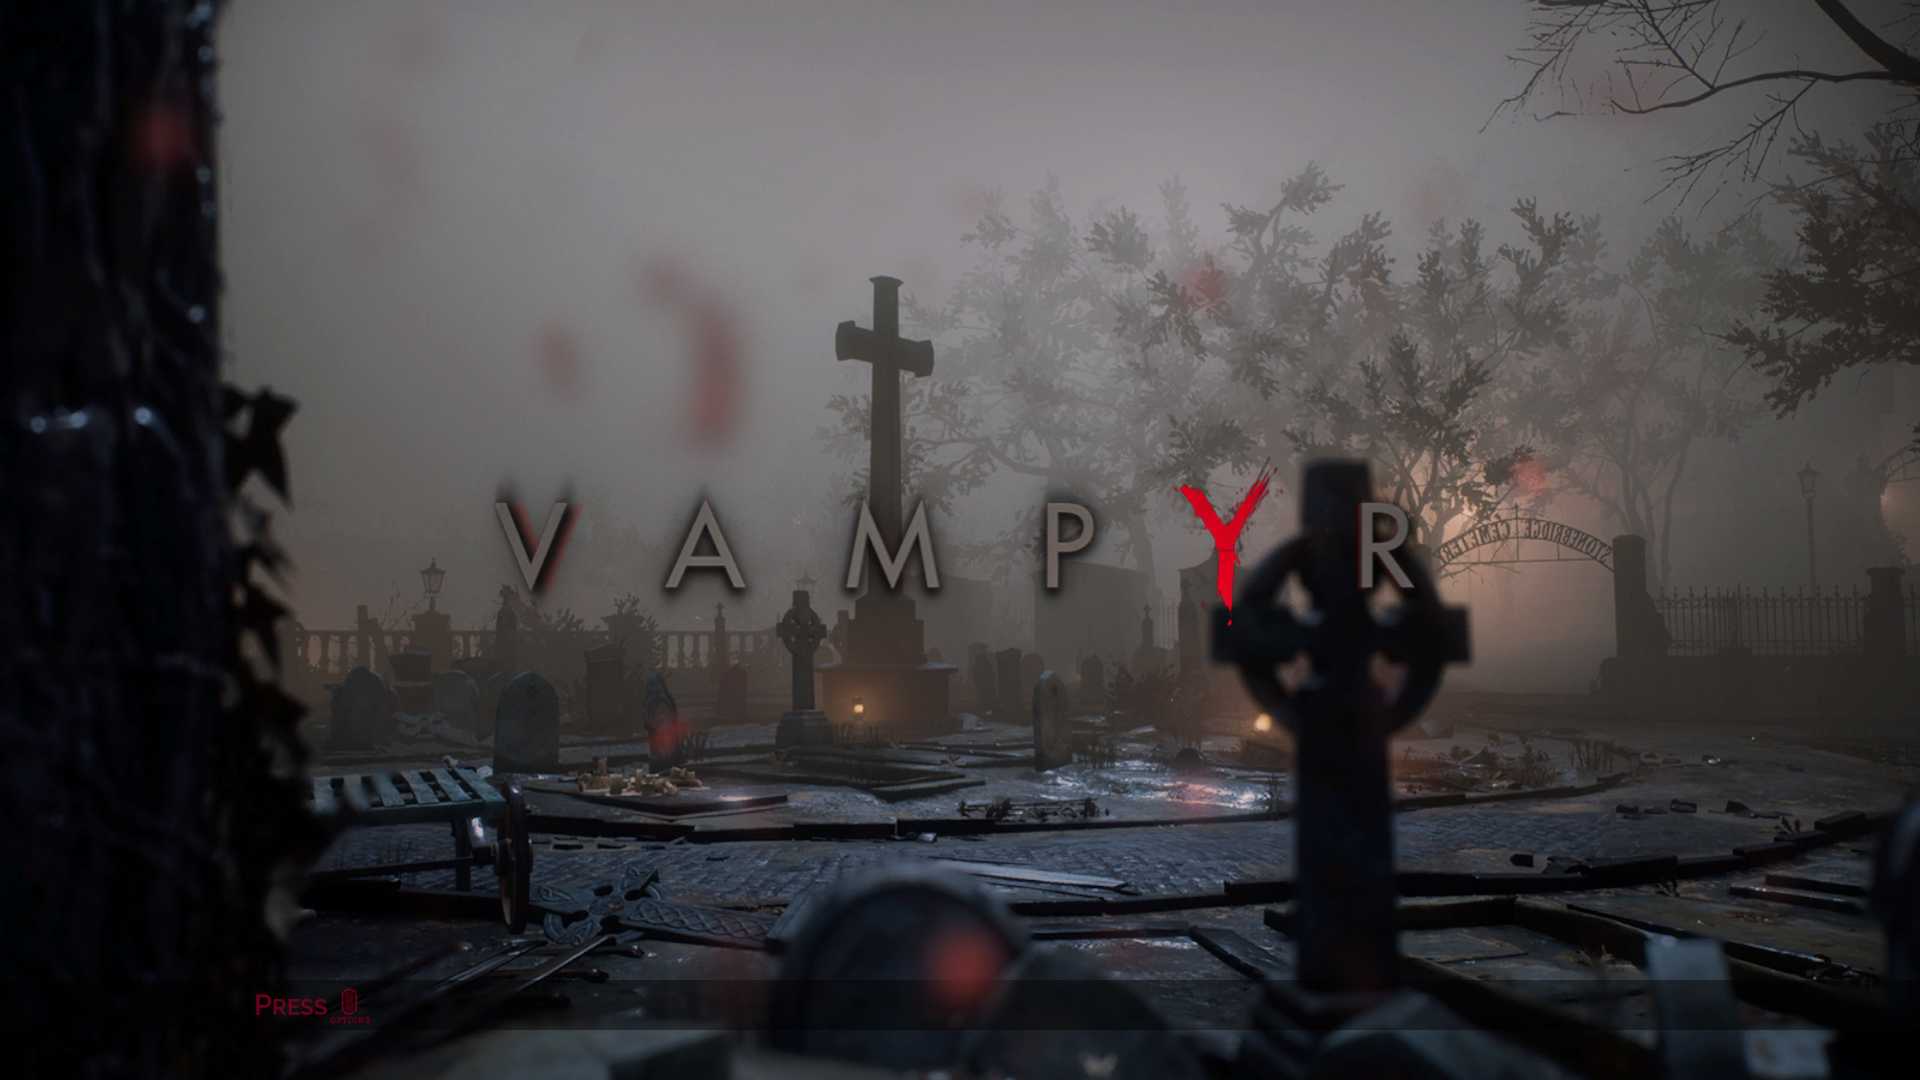 Vampyr Review #1